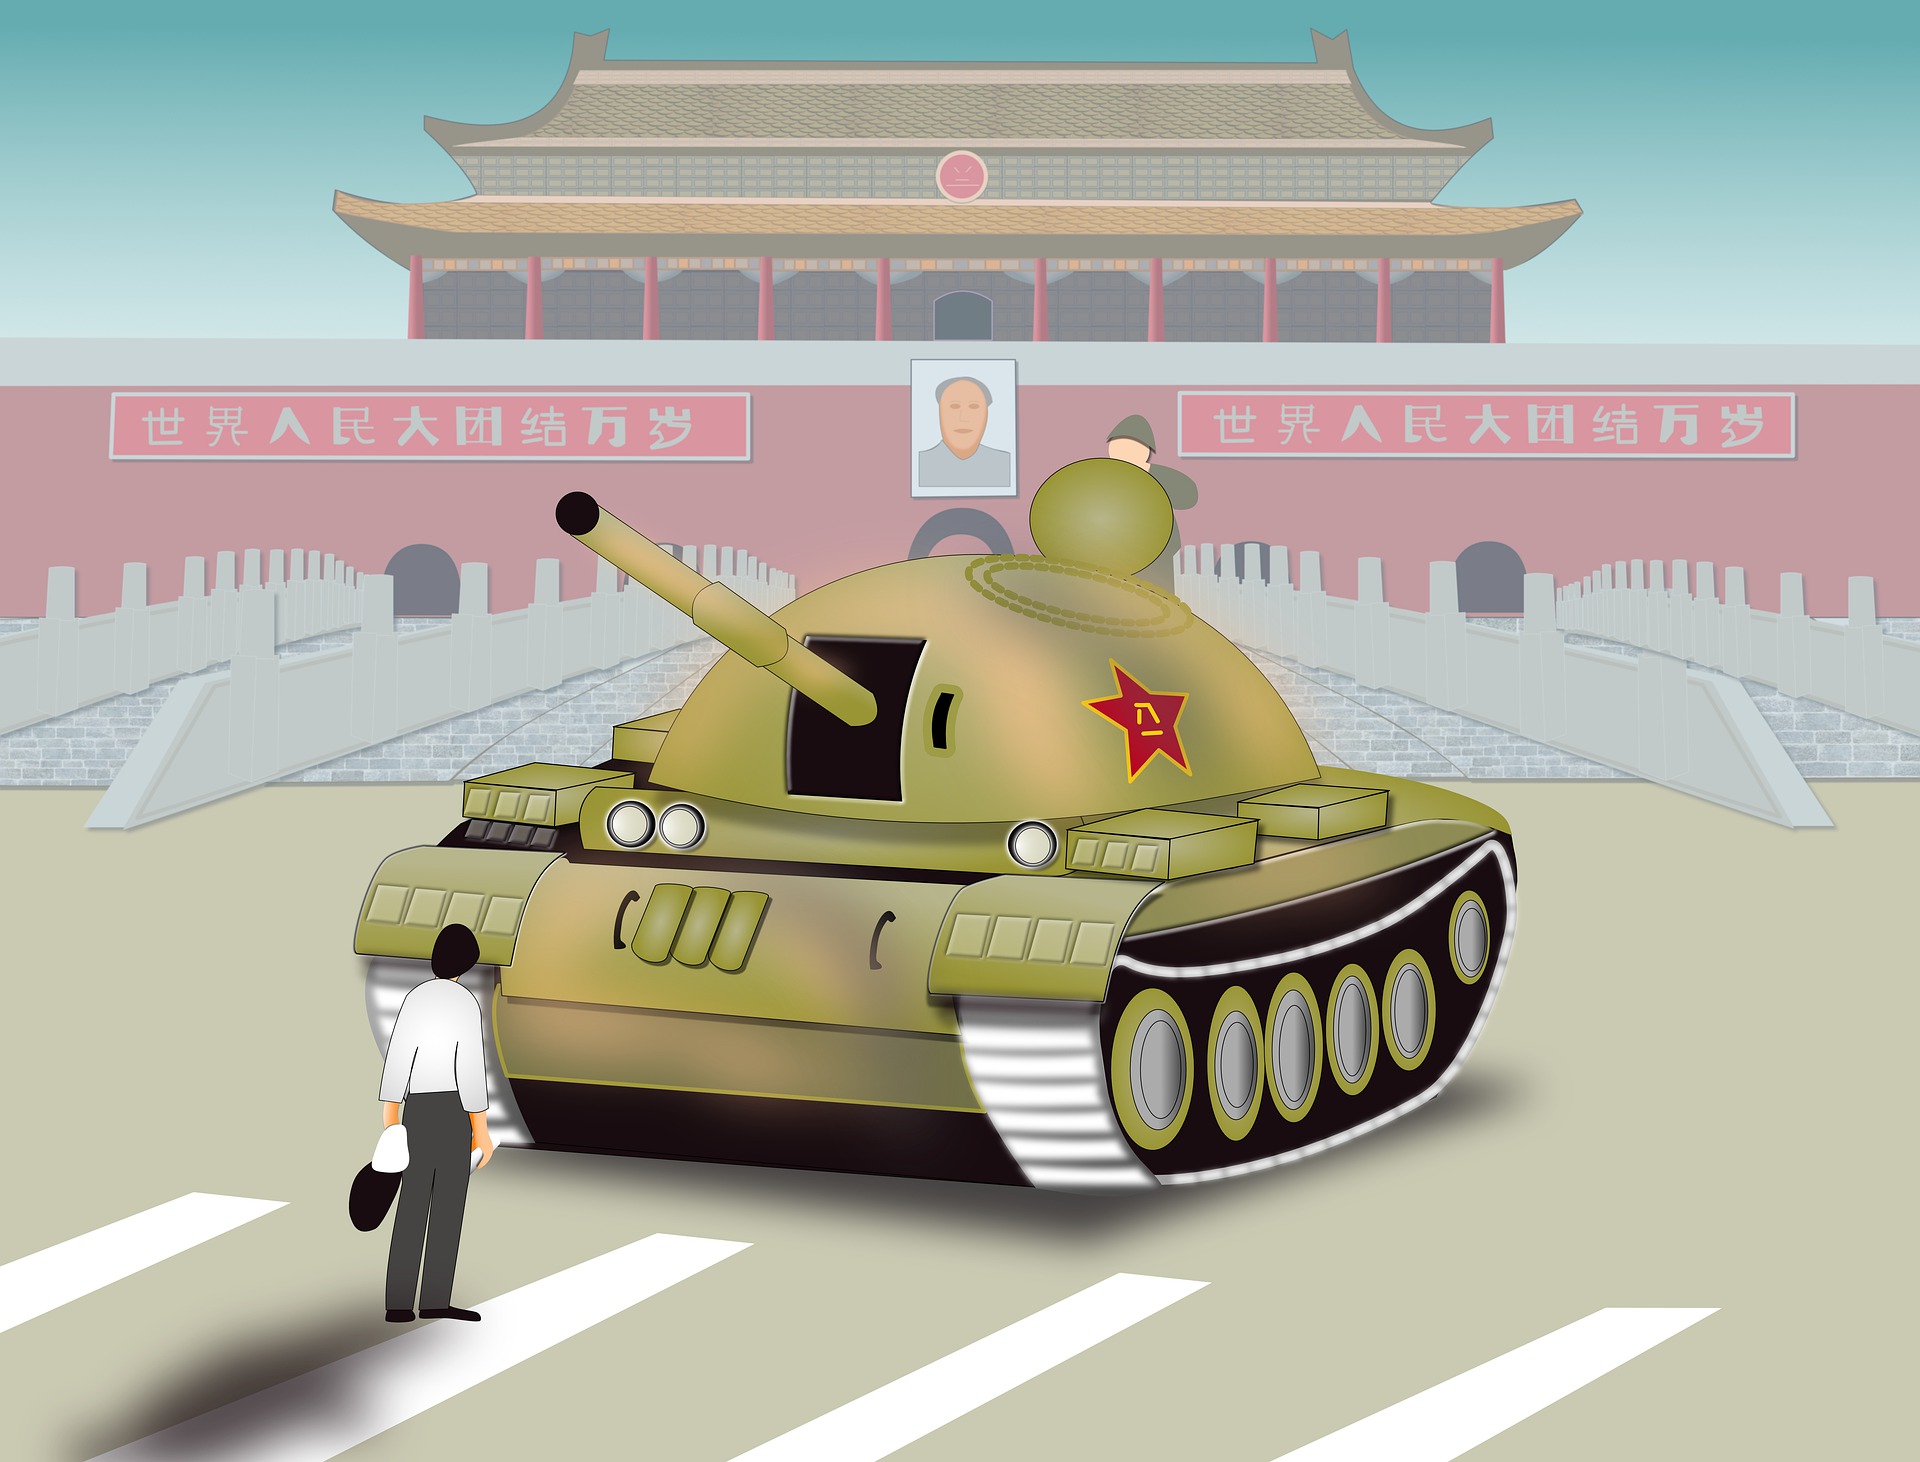 Tiananmen Square Massacre - AryamArourra